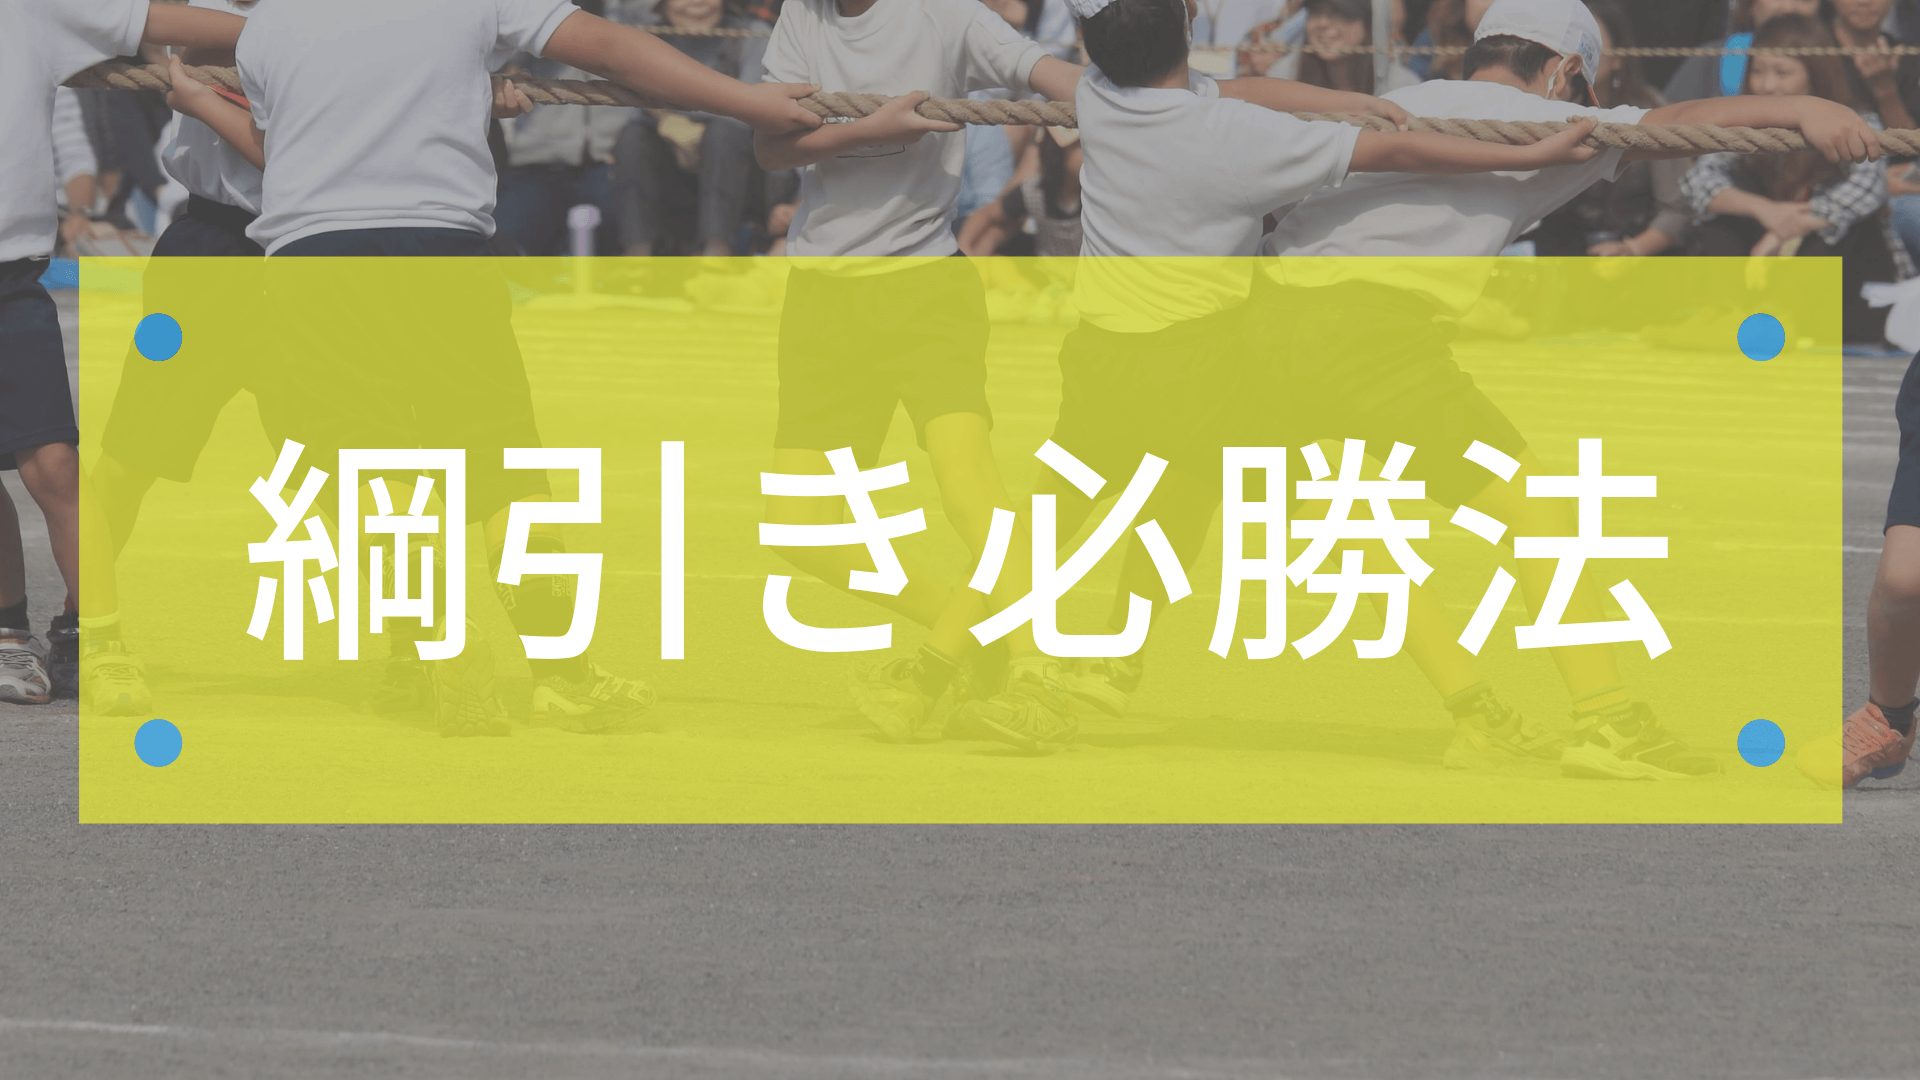 綱引き必勝法はこれだ 絶対勝てる作戦で運動会を有利に進めろ 東京で小学生の足を確実に速くするならgoogle 4 9の陸上アカデミア